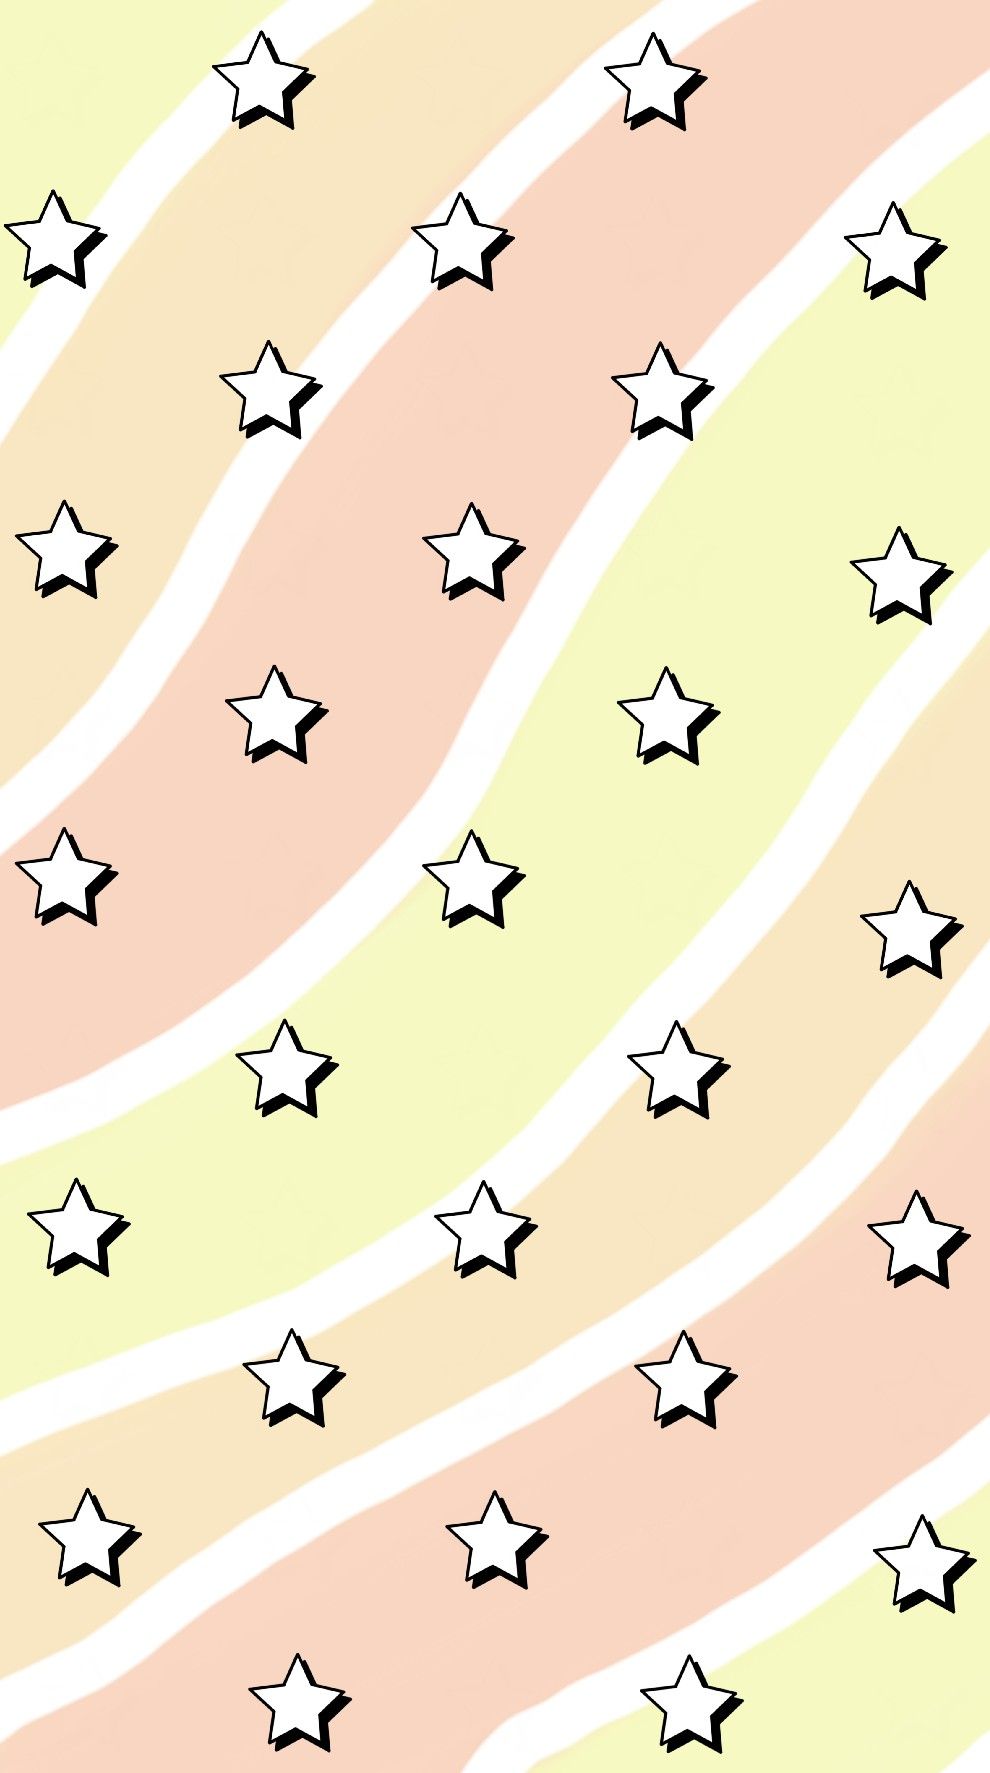 Star wallpapers: Bạn có yêu thích hình ảnh về những vì sao lấp lánh khi ban đêm không? Hãy tải ngay các bức tranh nền về vì sao để tận hưởng vẻ đẹp đầy lãng mạn và kì lạ này.